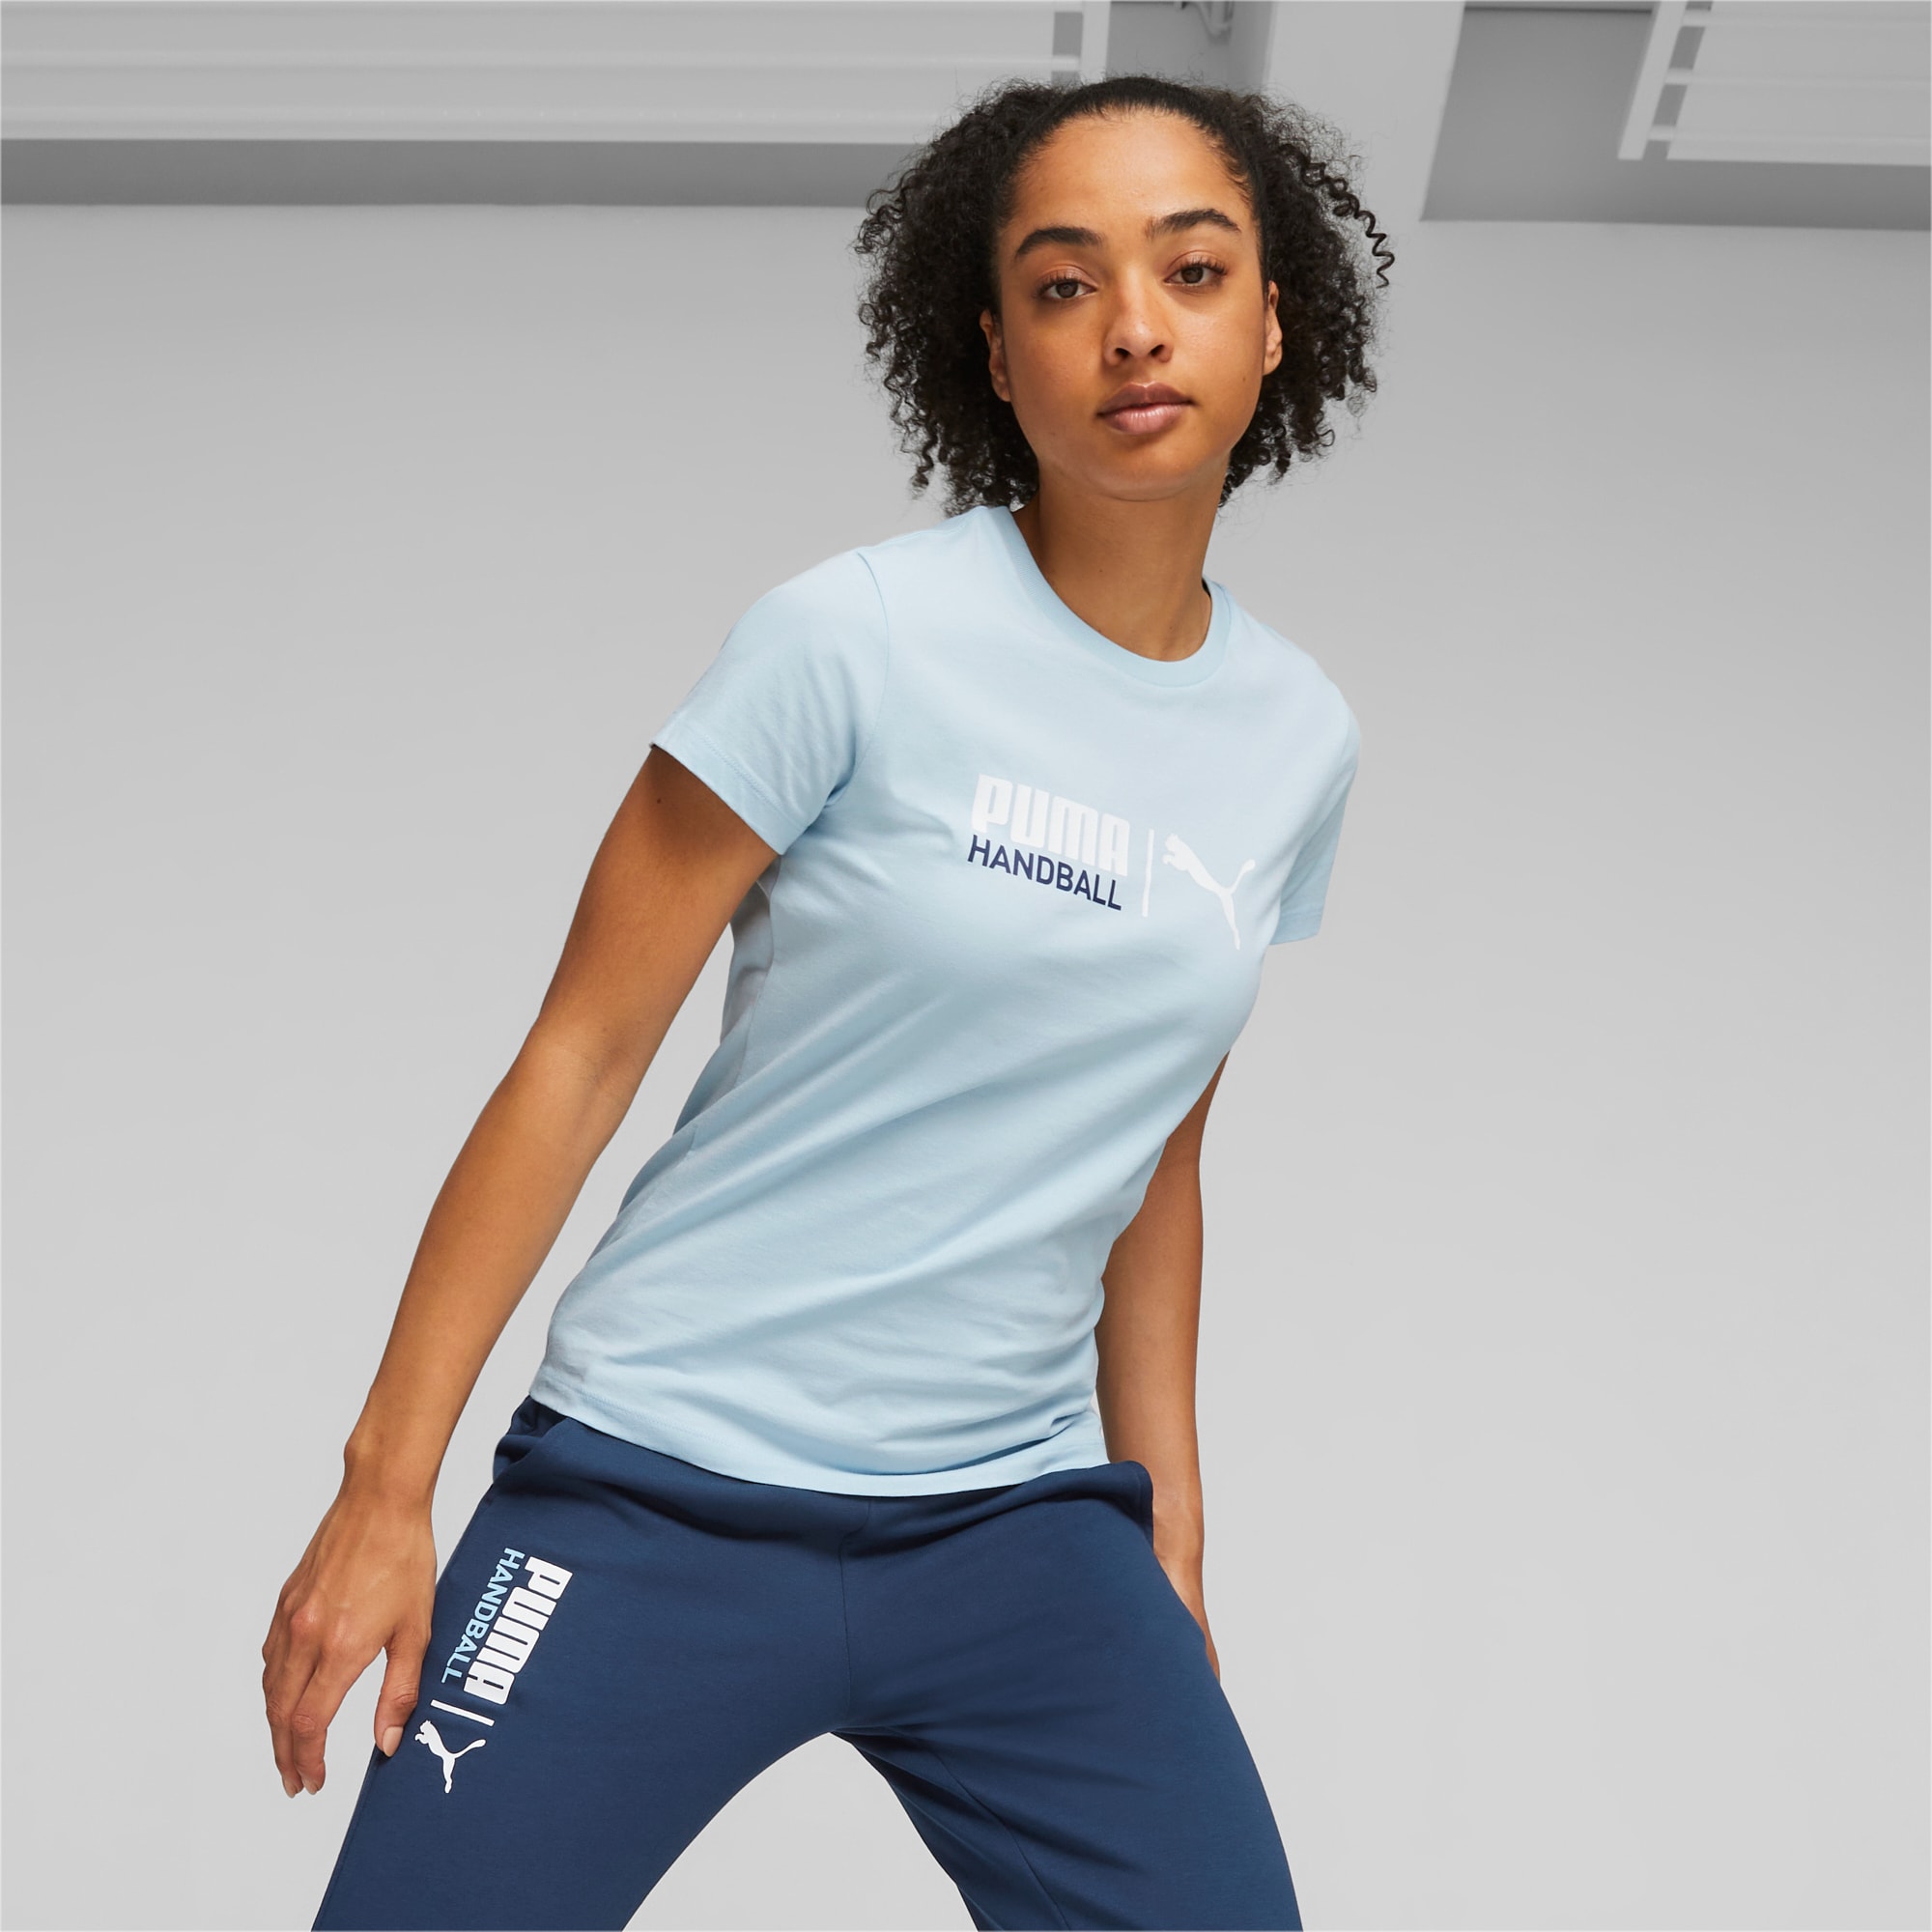 T-Shirt PUMA Handball Da Donna, Argento/Altro